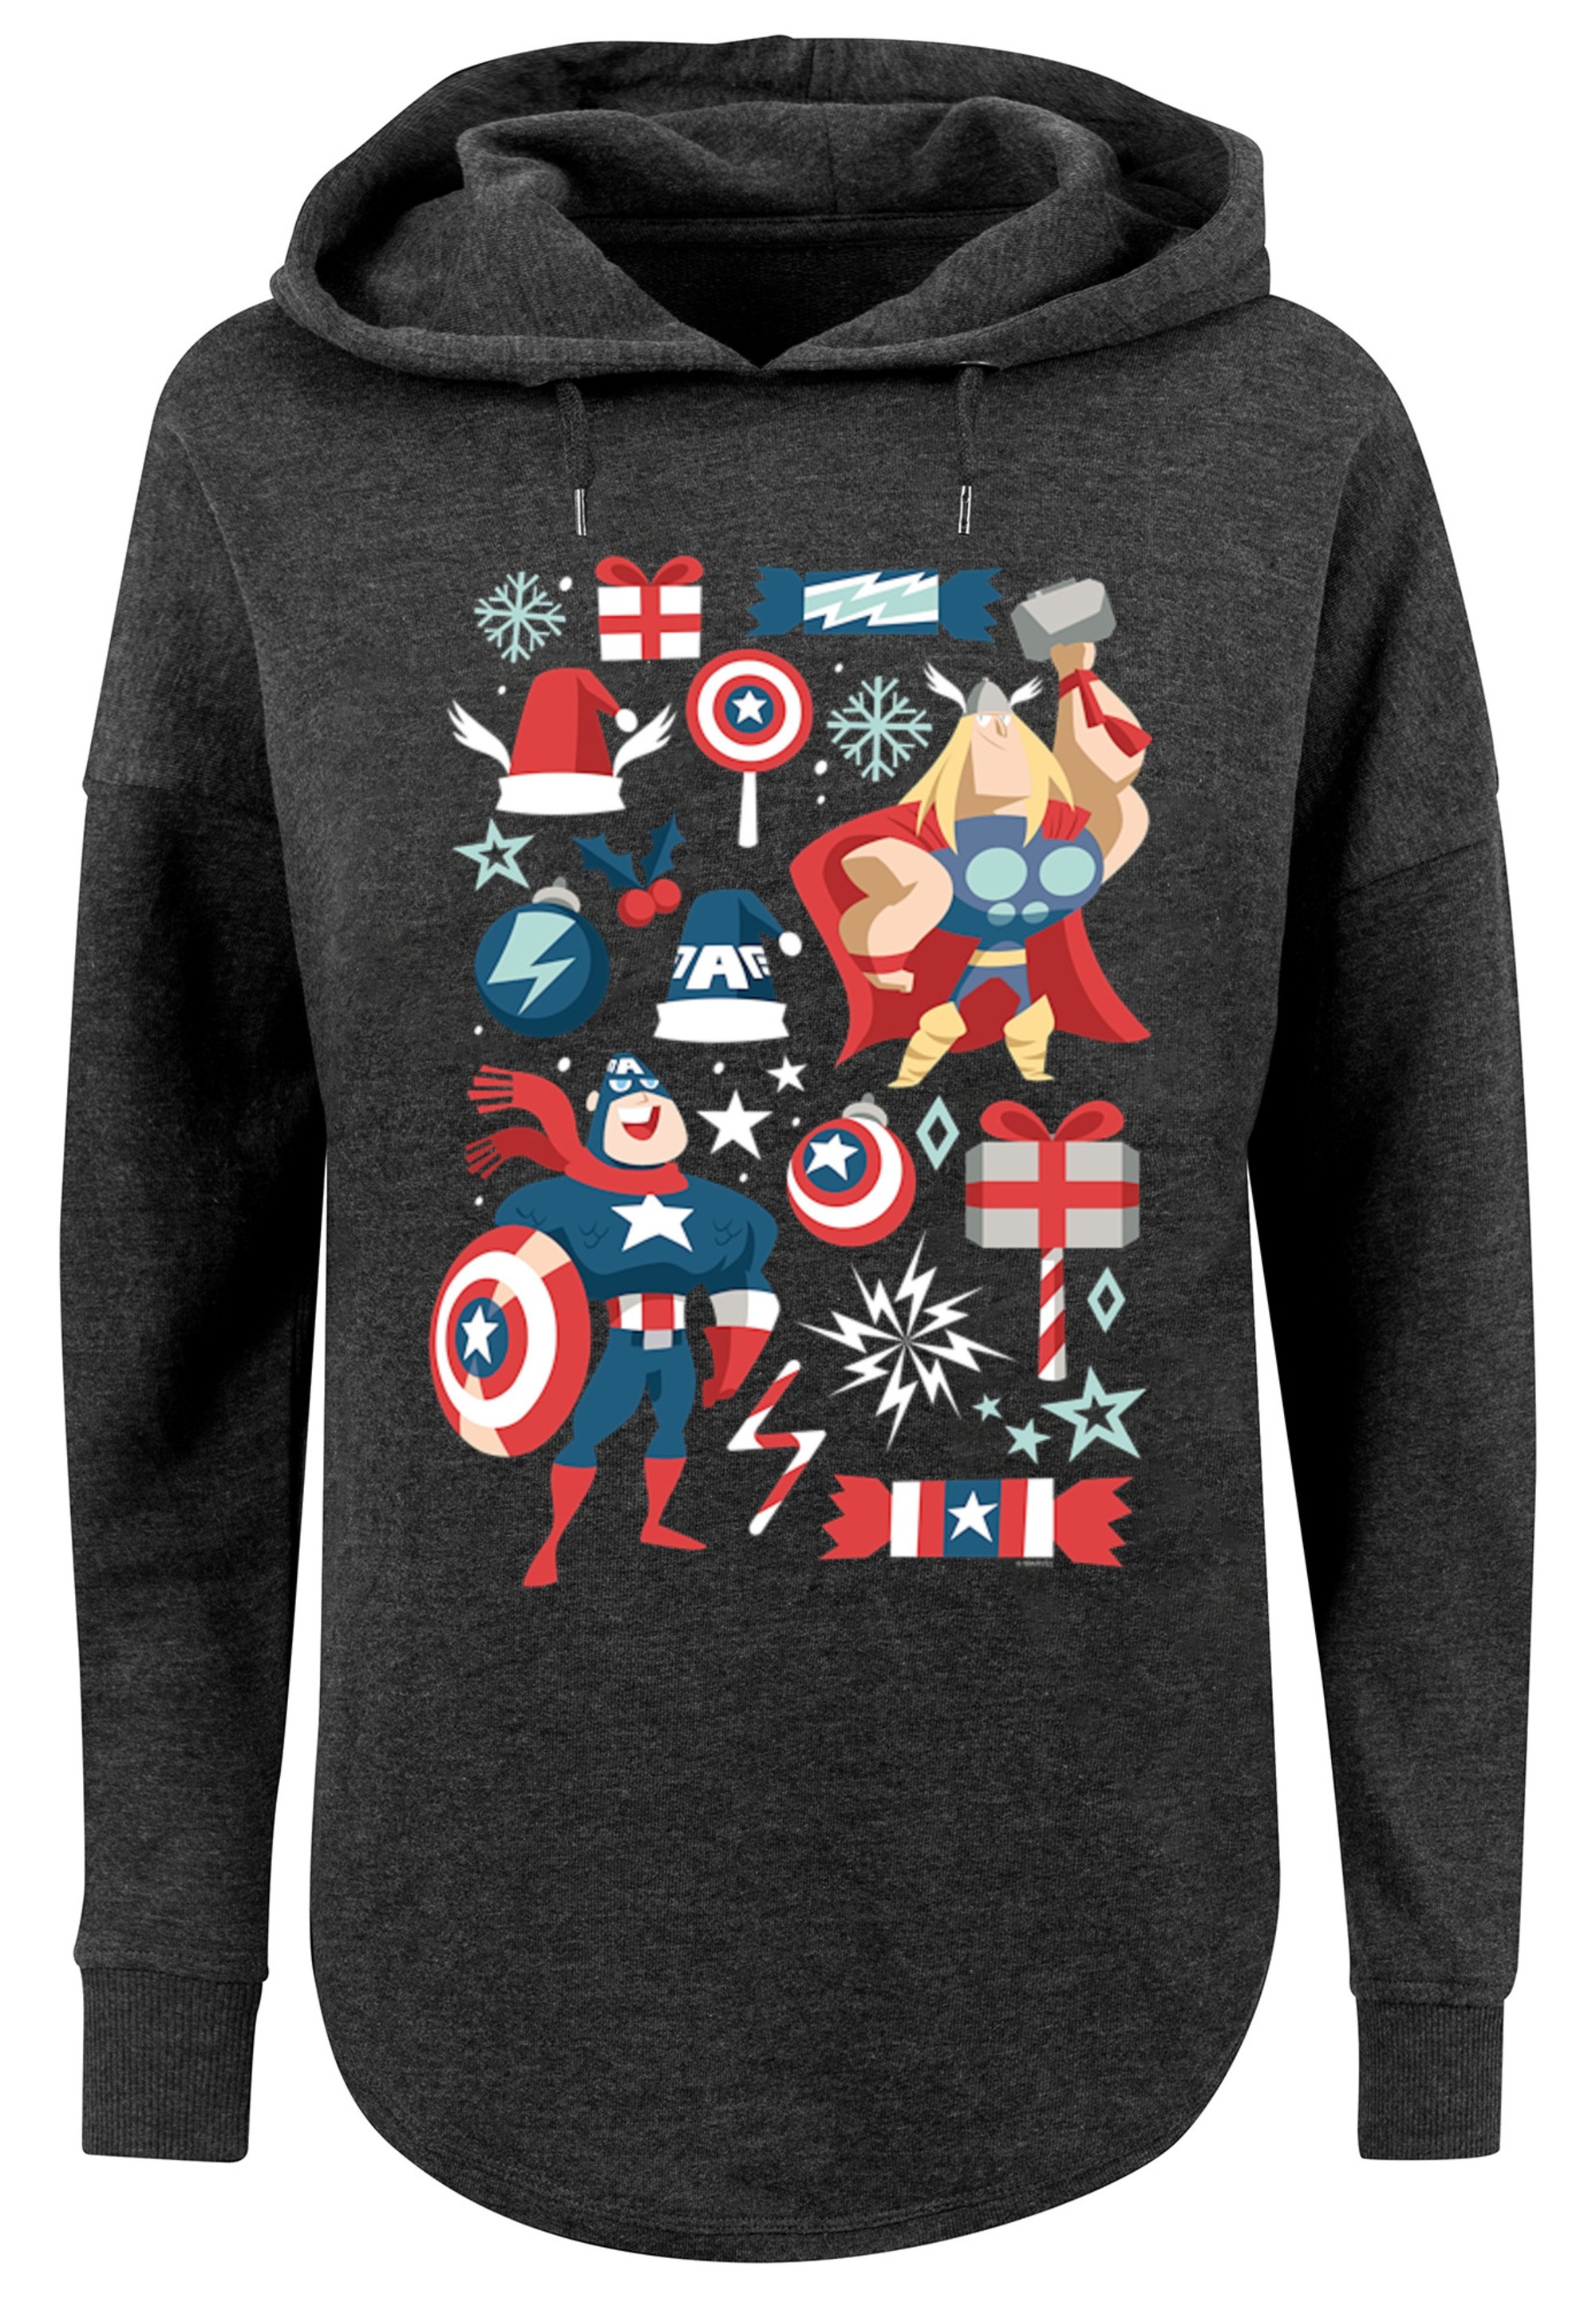 Captain und »Marvel Thor F4NT4STIC Kapuzenpullover shoppen weihnachten«, Print America